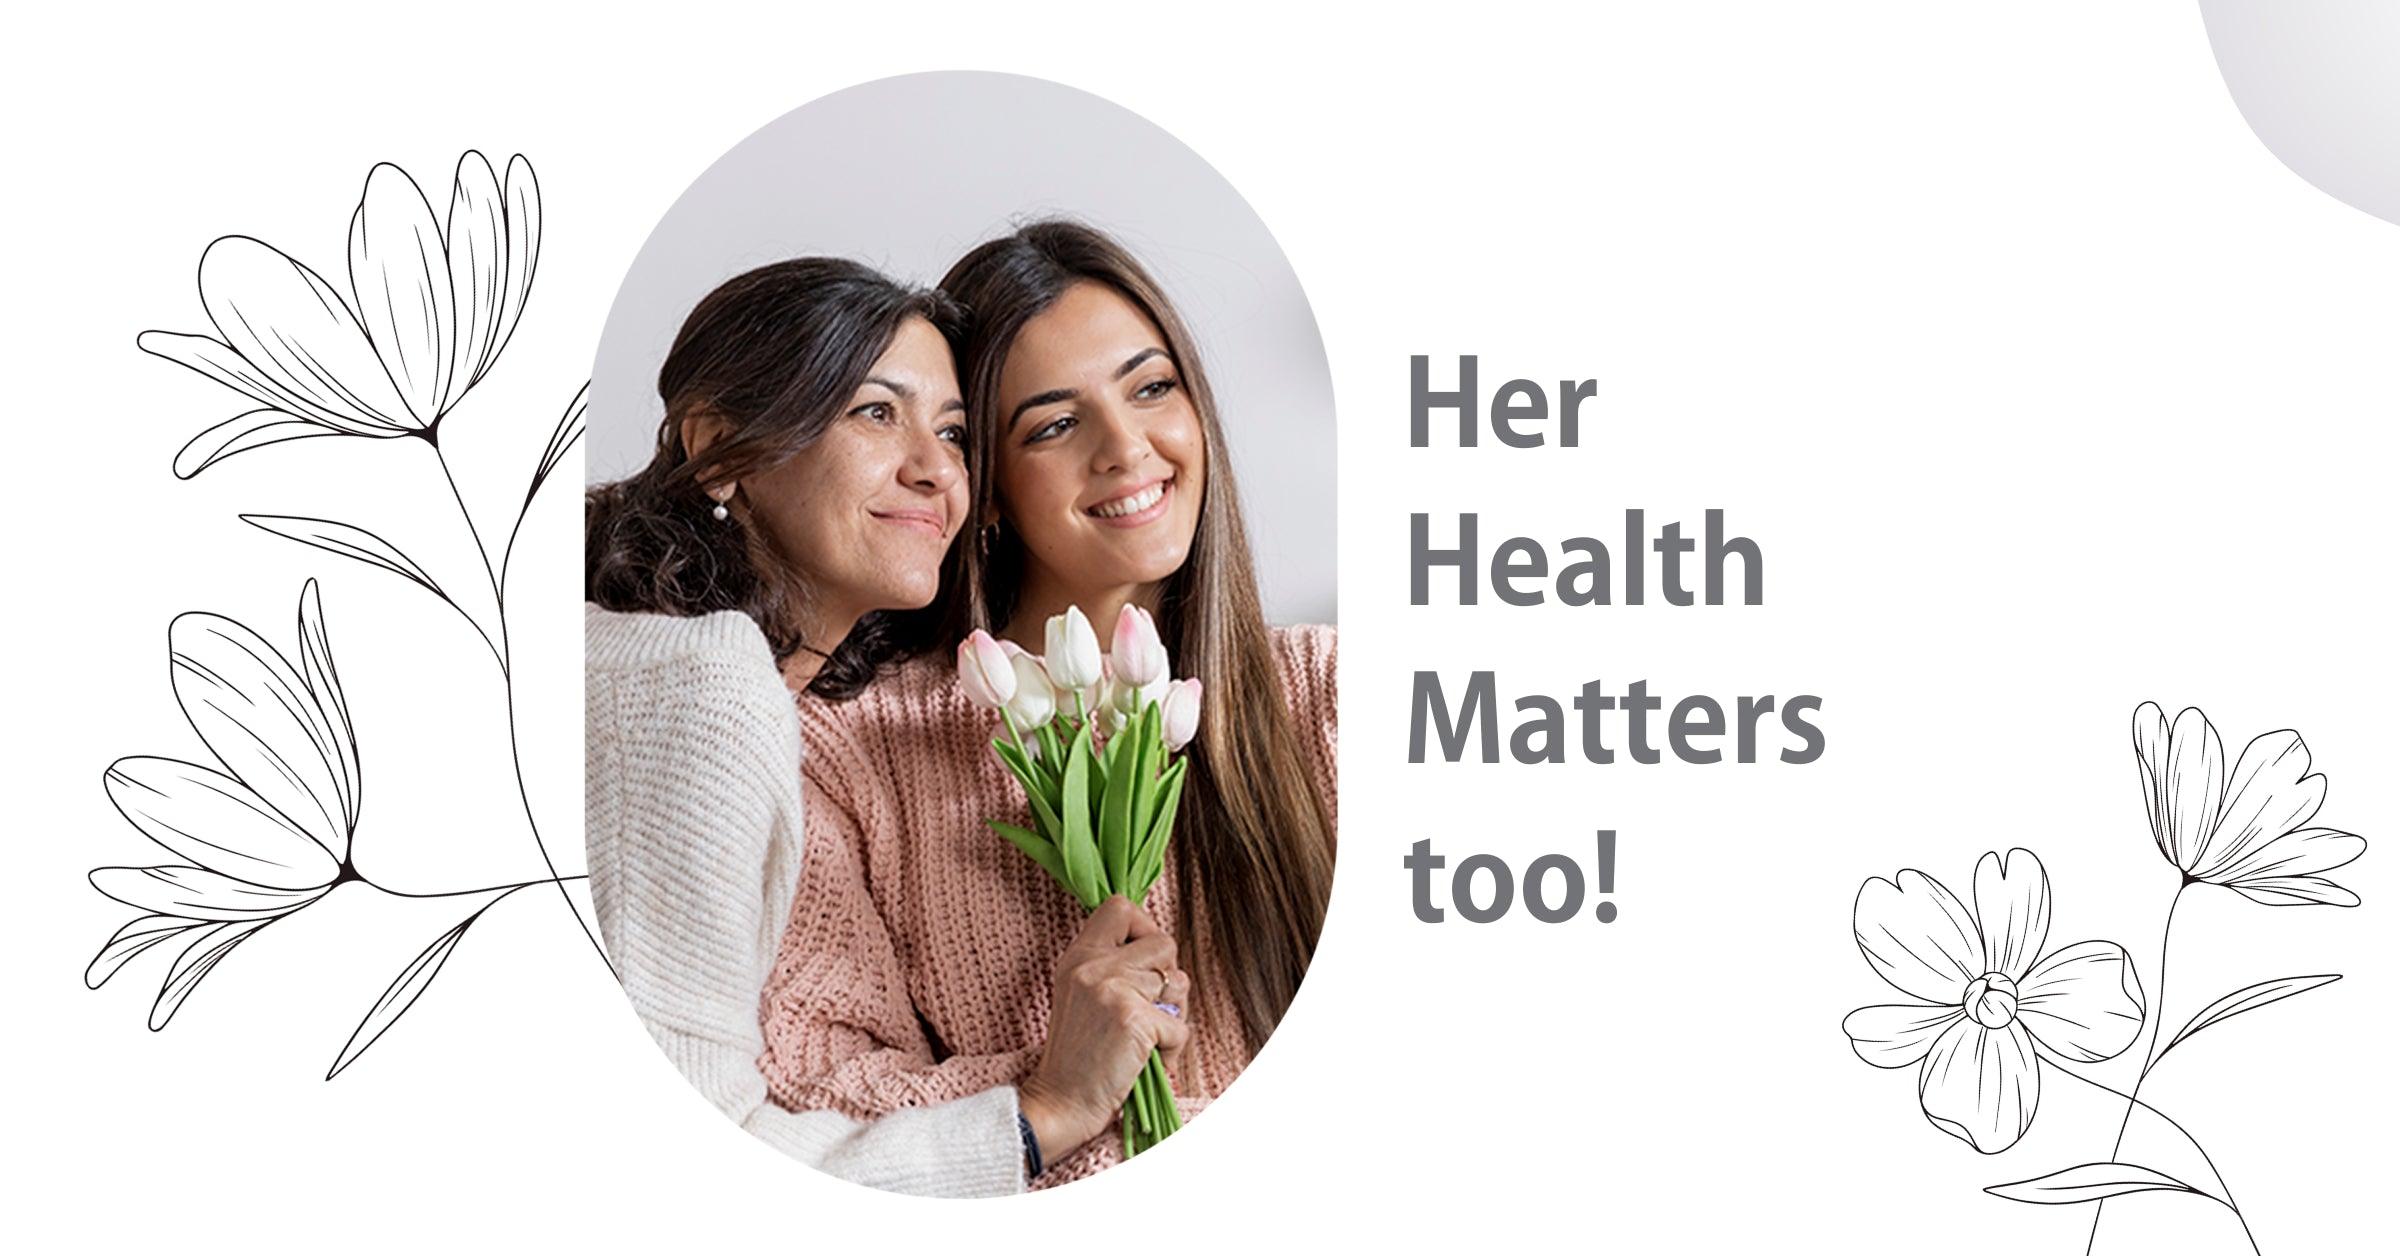 Women Health Matters too! - Understand her Health Needs